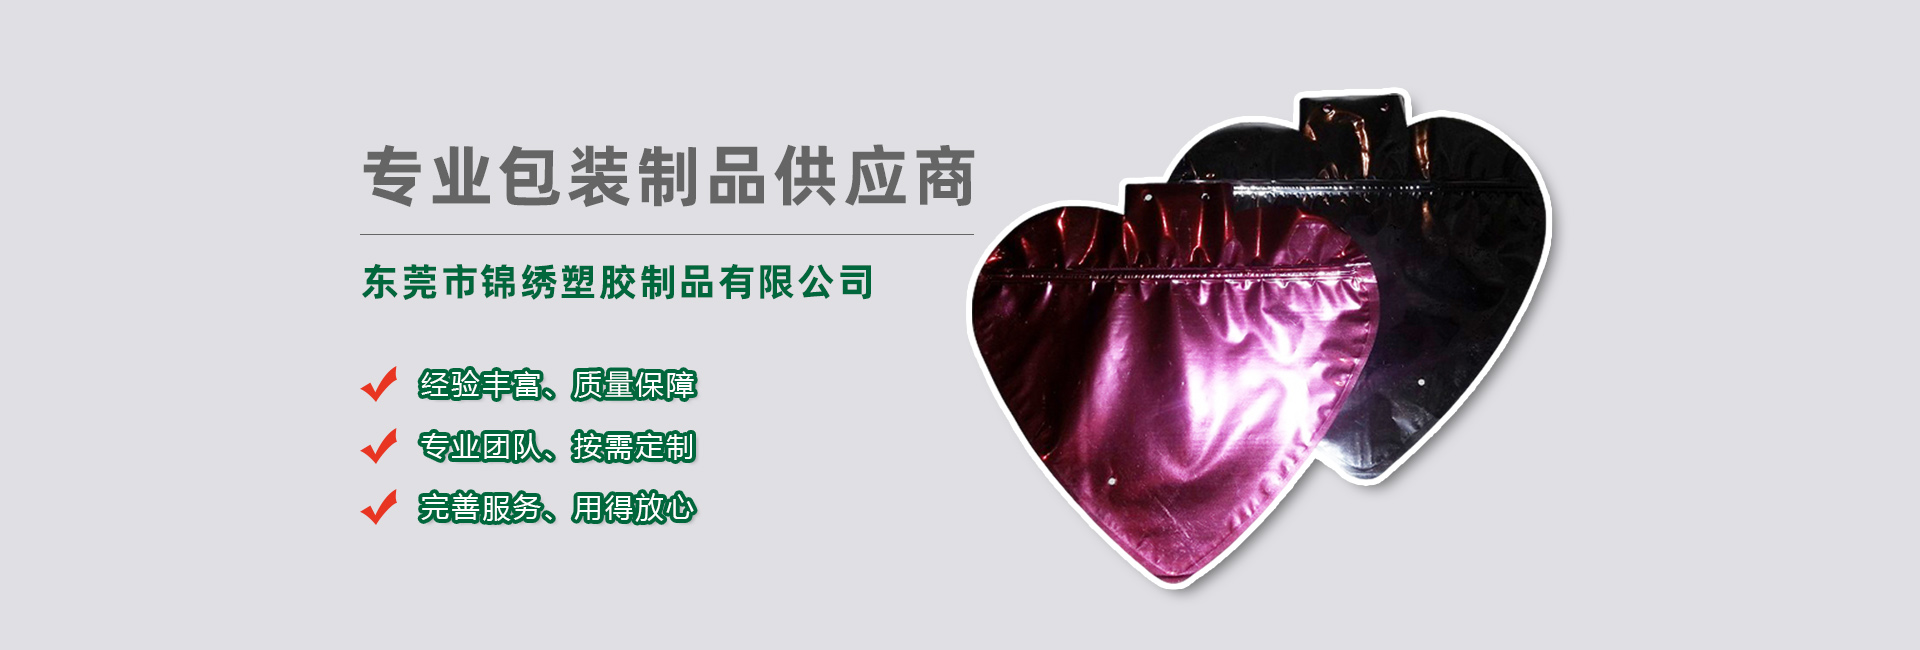 黔江食品袋banner